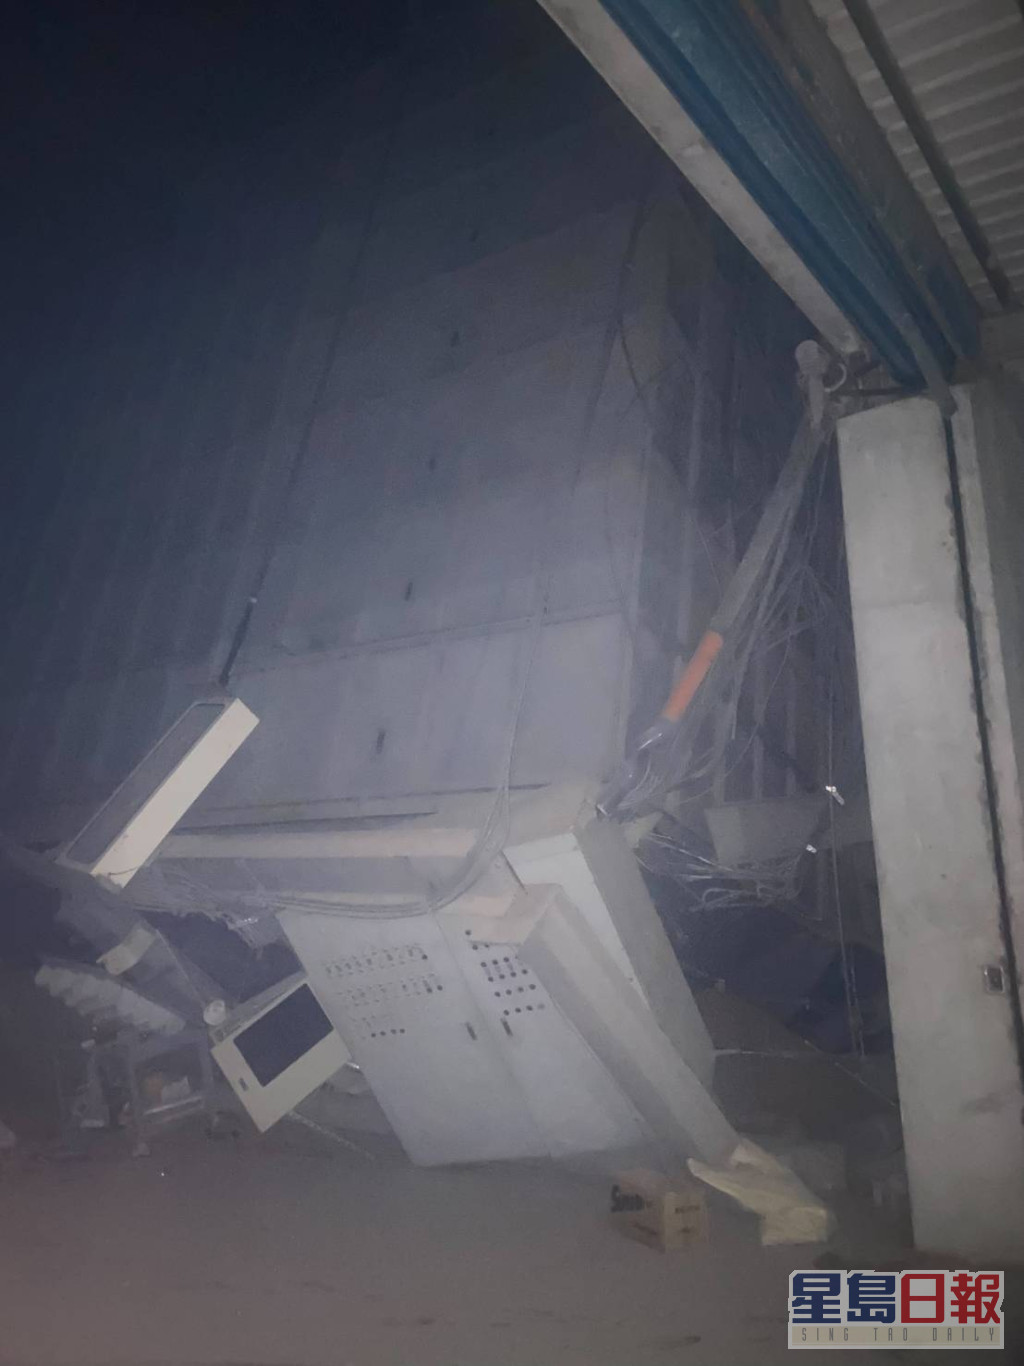 關山一間碾米廠的穀物倉庫倒塌。fb